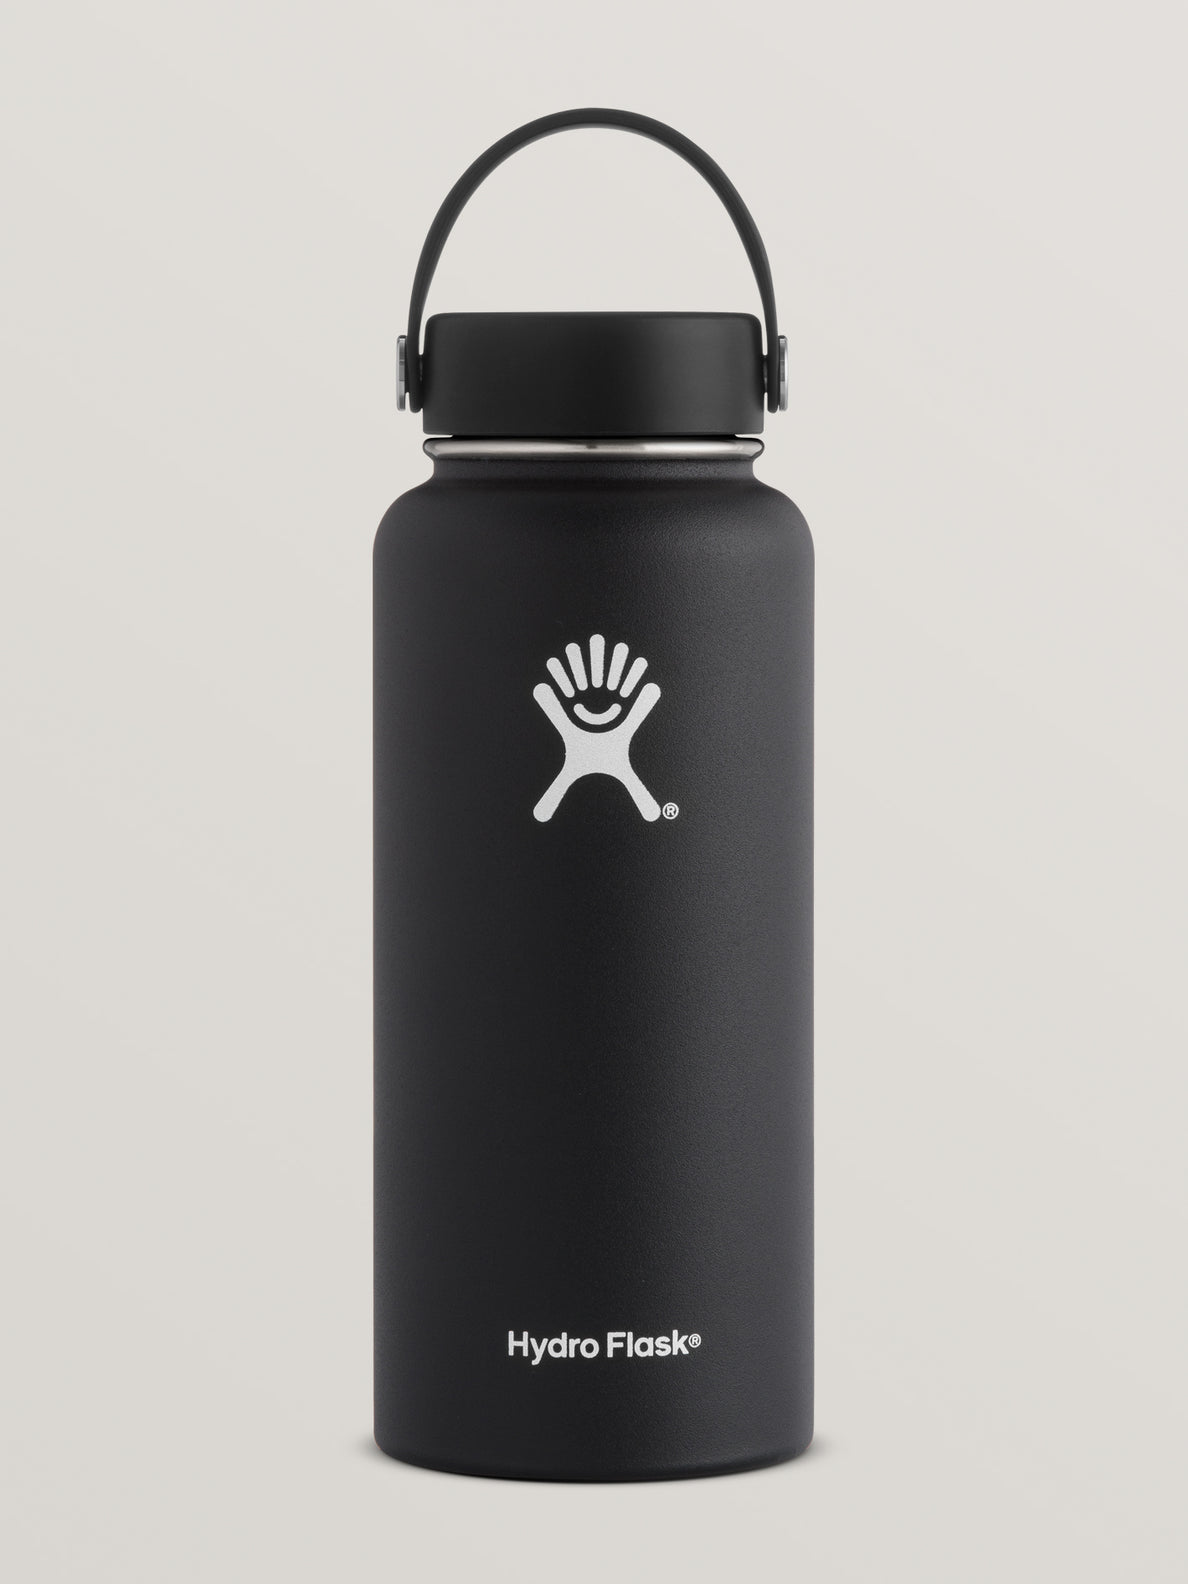 36 oz hydro flask